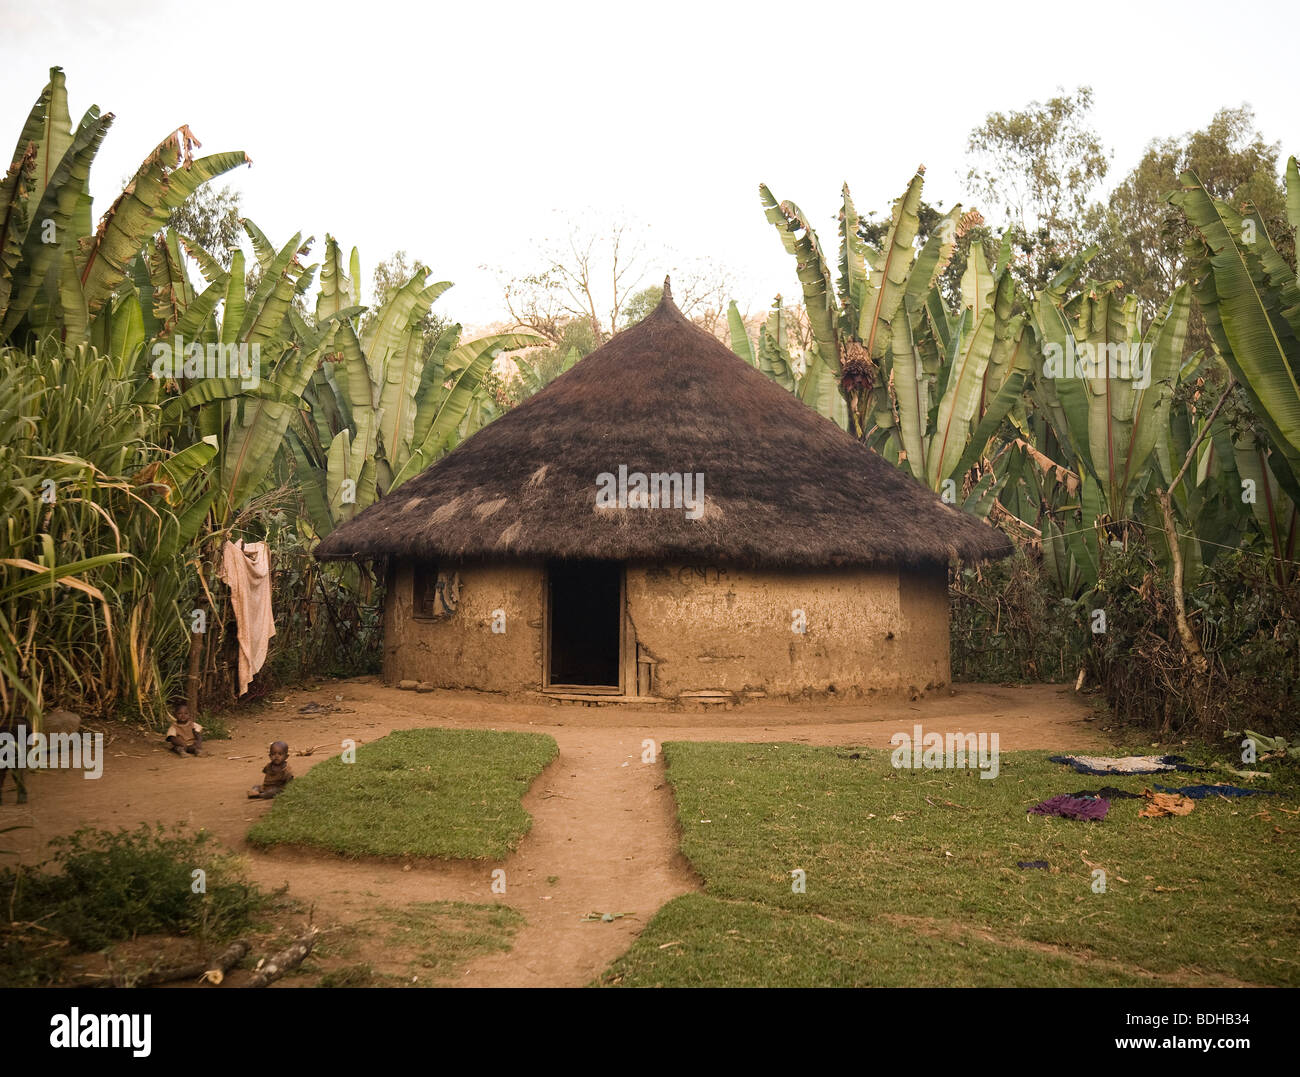 Una capanna di fango di forma conica con tetto di paglia in una radura circondata da alberi di banane. Foto Stock